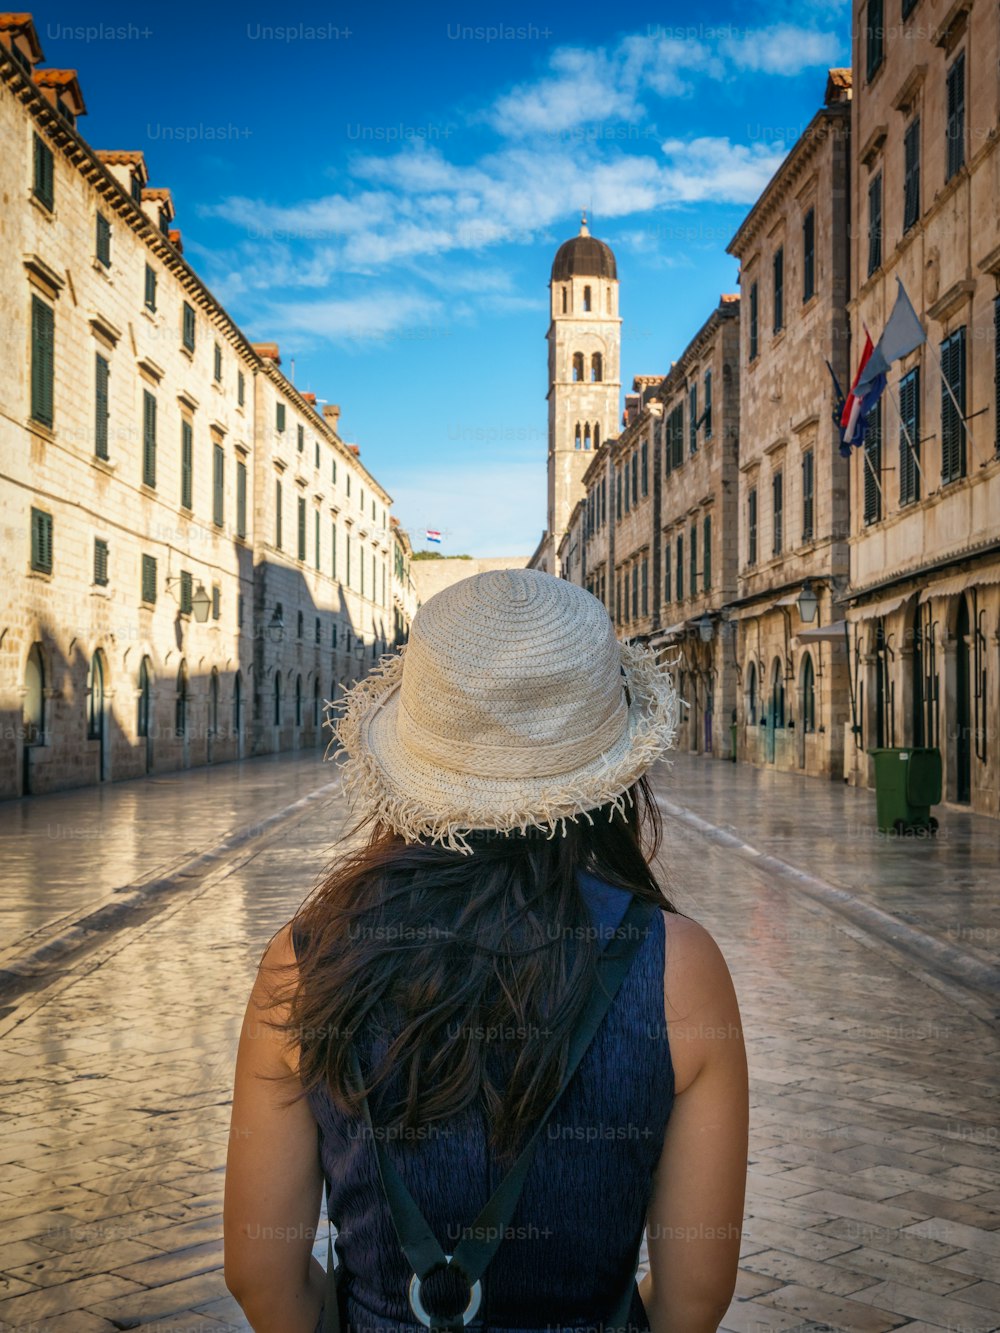 Reisende spazieren auf der historischen Straße Stradun (Placa) in der Altstadt von Dubrovnik in Kroatien - Prominentes Reiseziel von Kroatien. Die Altstadt von Dubrovnik wurde 1979 zum UNESCO-Weltkulturerbe erklärt.